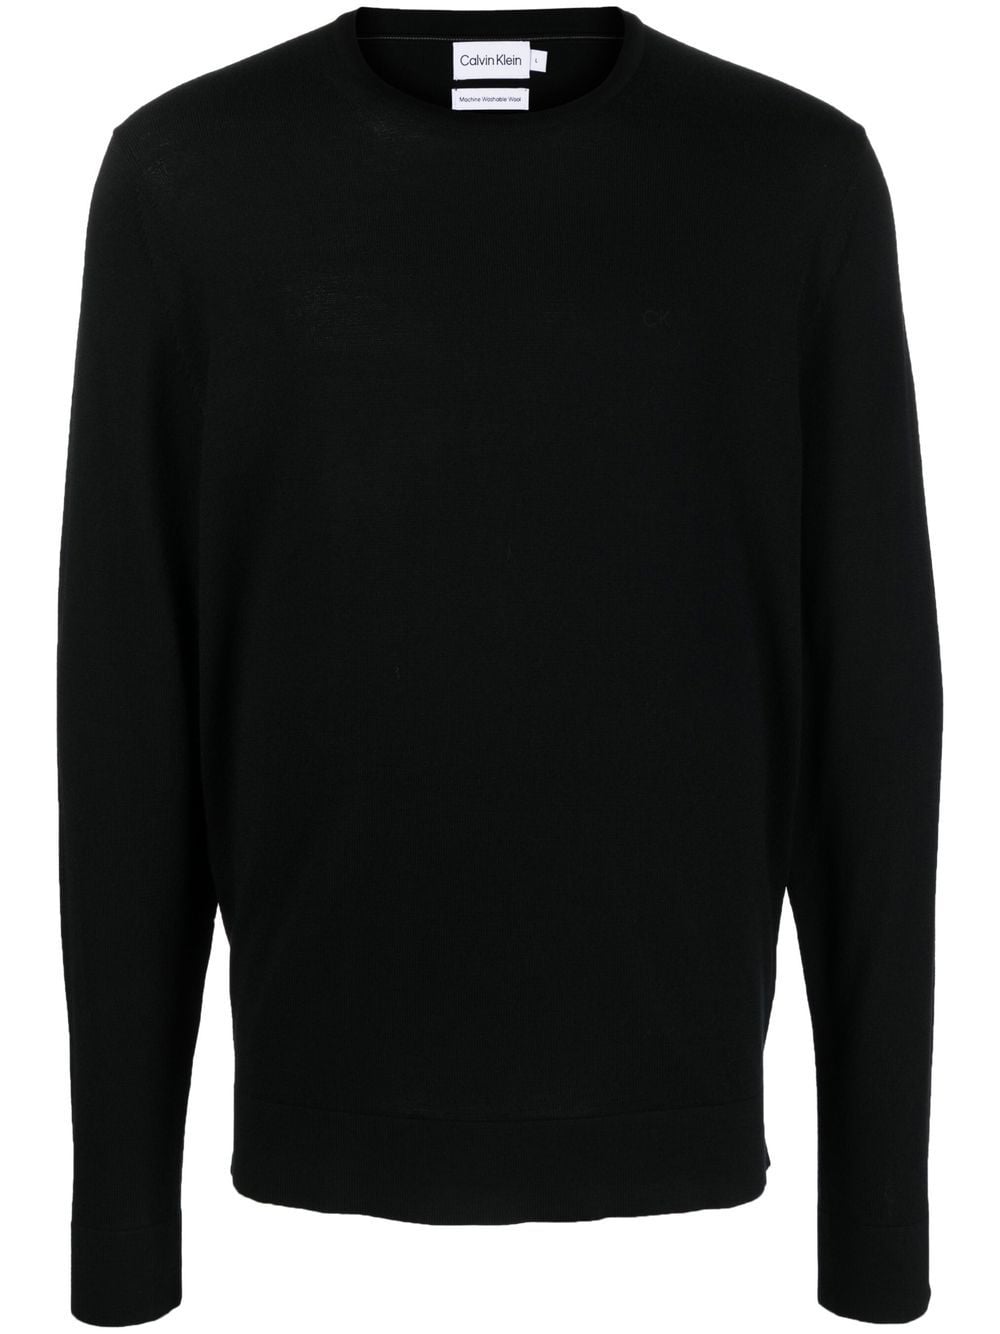 Image 1 of Calvin Klein round-neck knit jumper